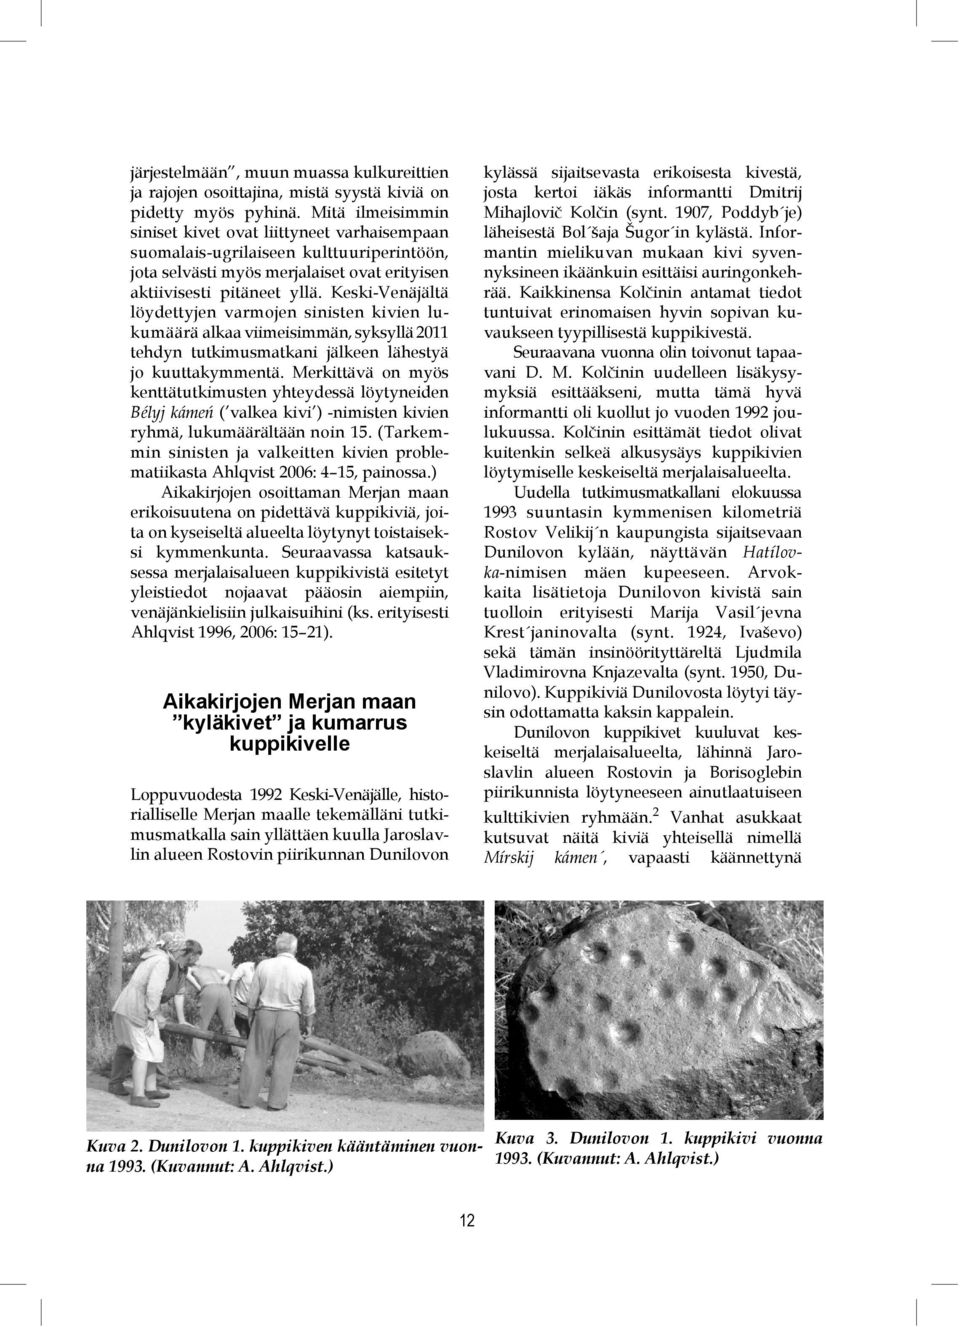 Keski-Venäjältä löydettyjen varmojen sinisten kivien lukumäärä alkaa viimeisimmän, syksyllä 2011 tehdyn tutkimusmatkani jälkeen lähestyä jo kuuttakymmentä.